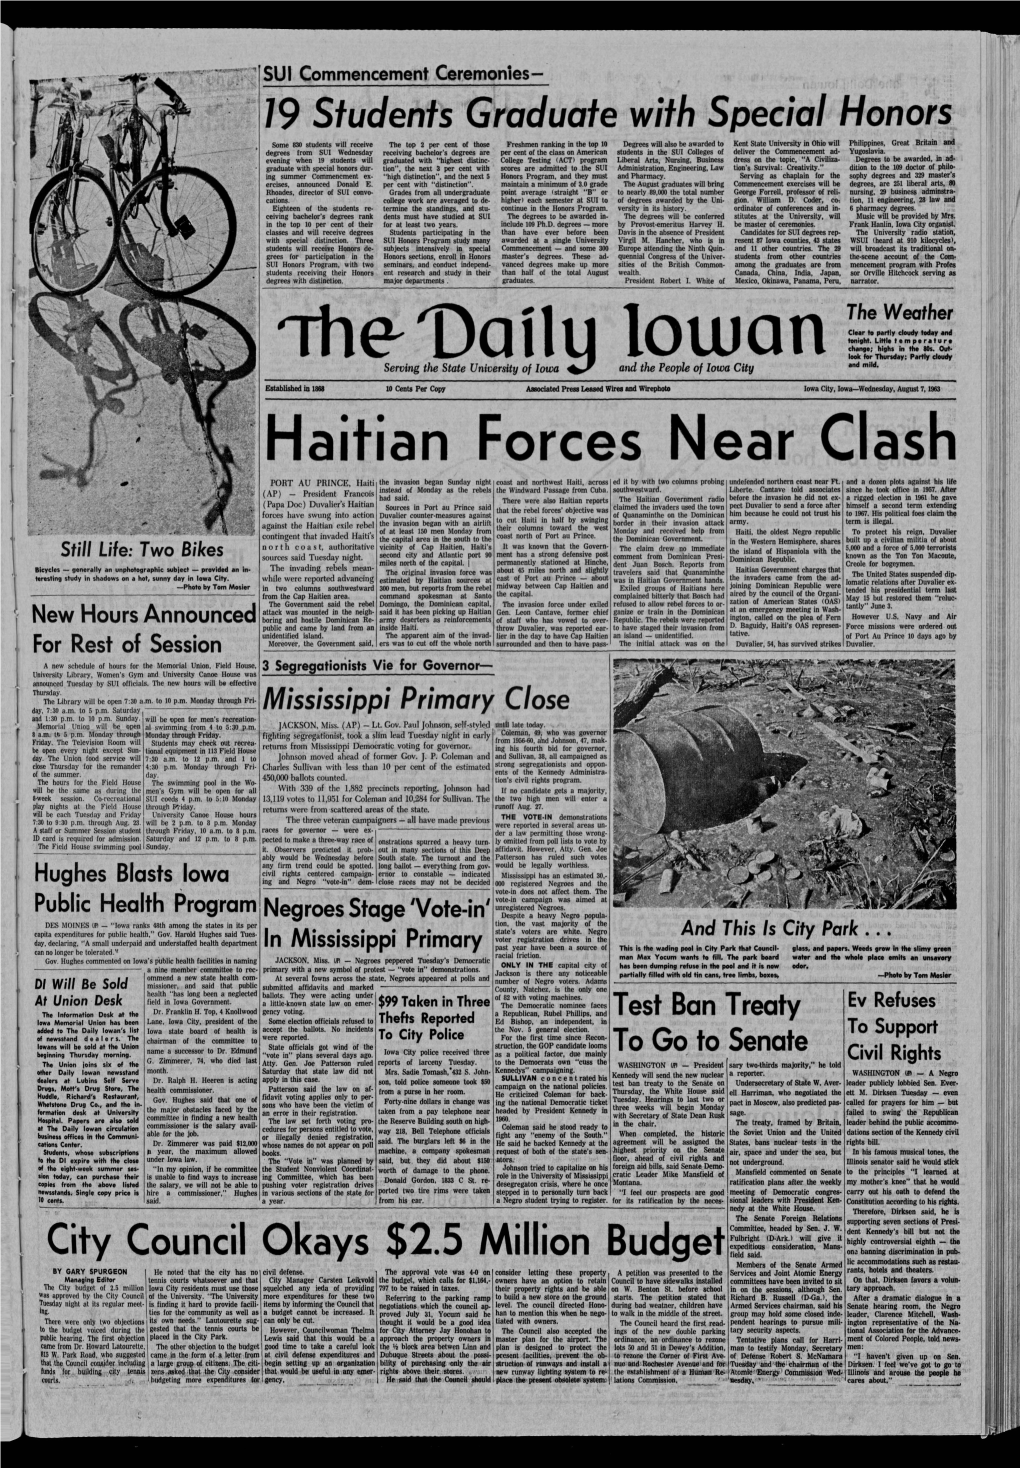 Daily Iowan (Iowa City, Iowa), 1963-08-07